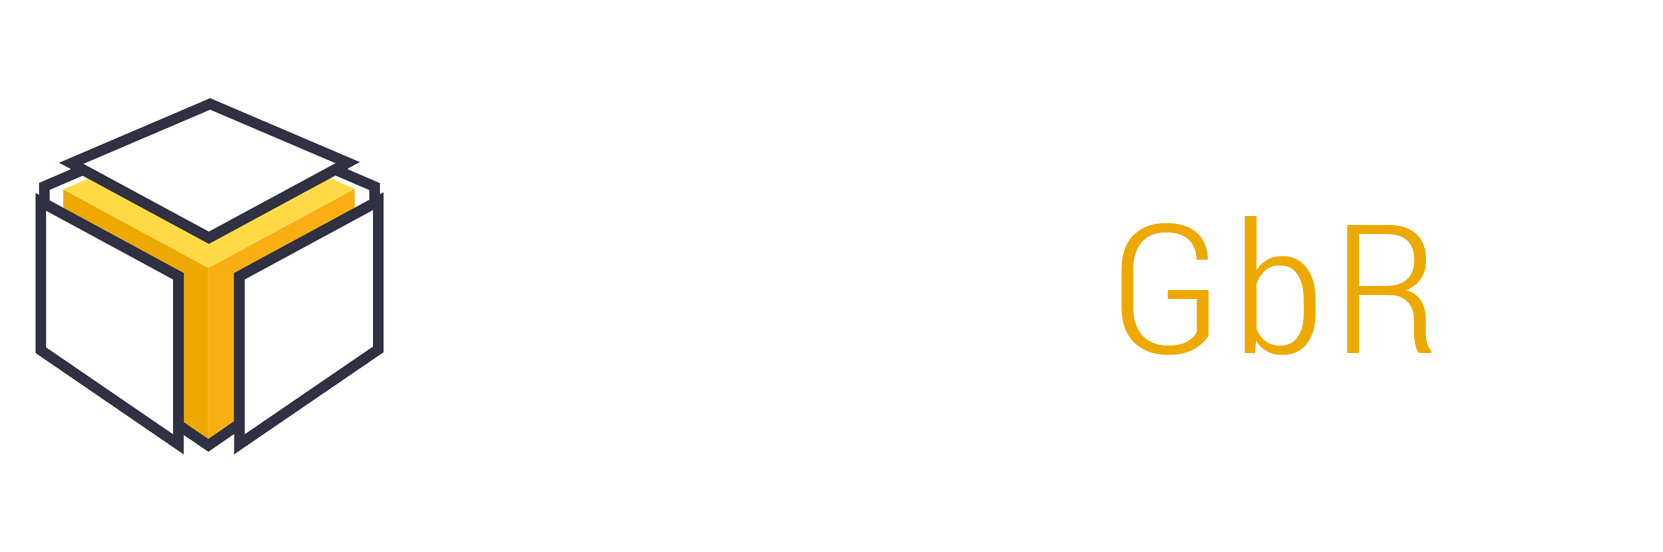 Nanos